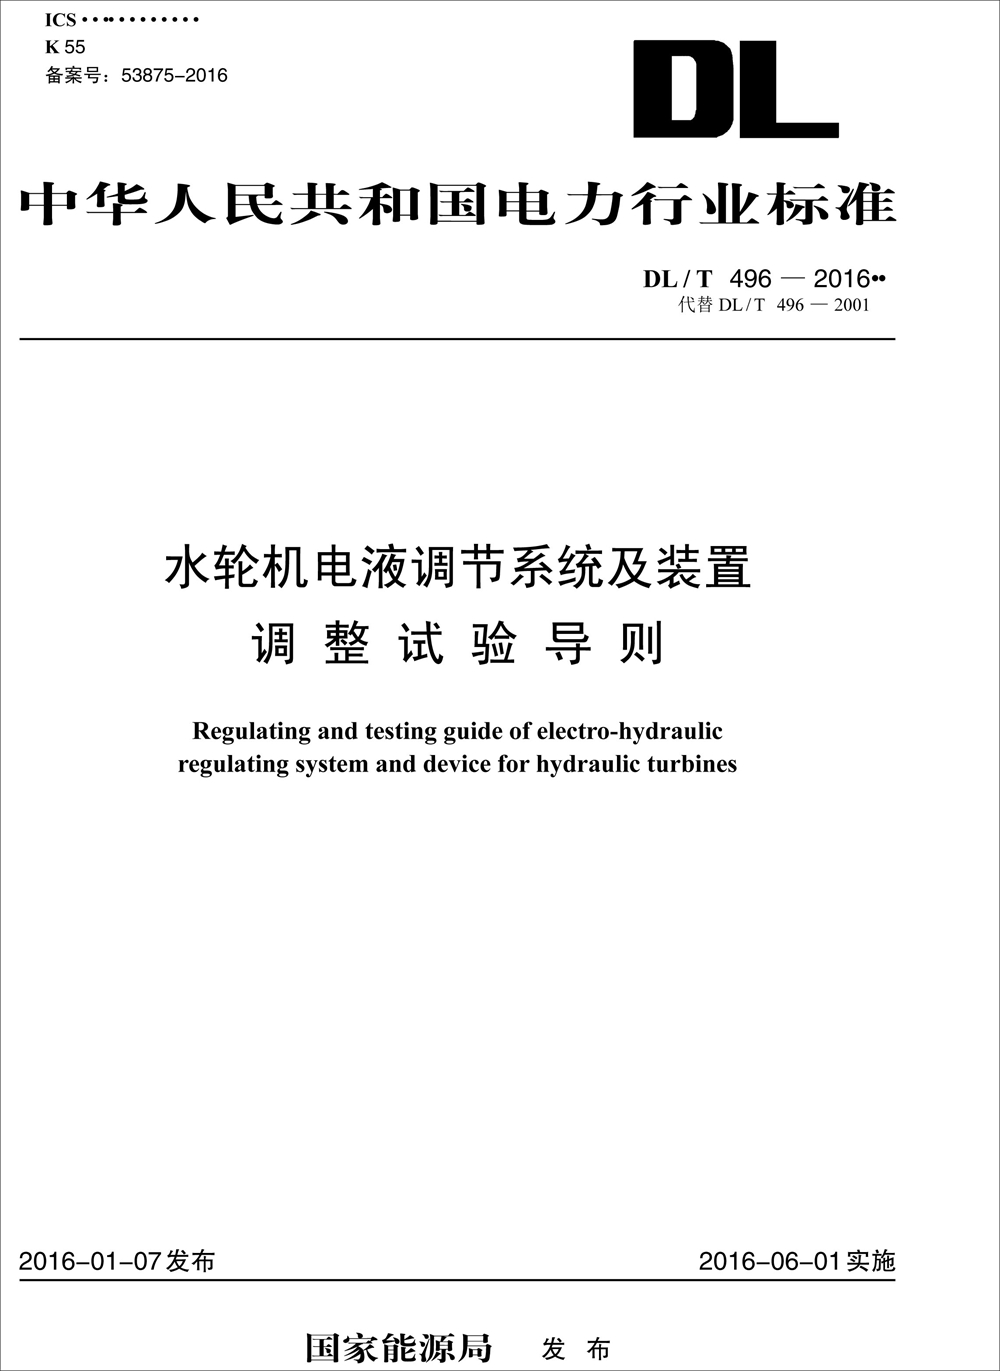 中华人民共和国电力行业标准（DL/T 496-2016）：水轮机电液调节系统及装置调整试验导则 mobi格式下载